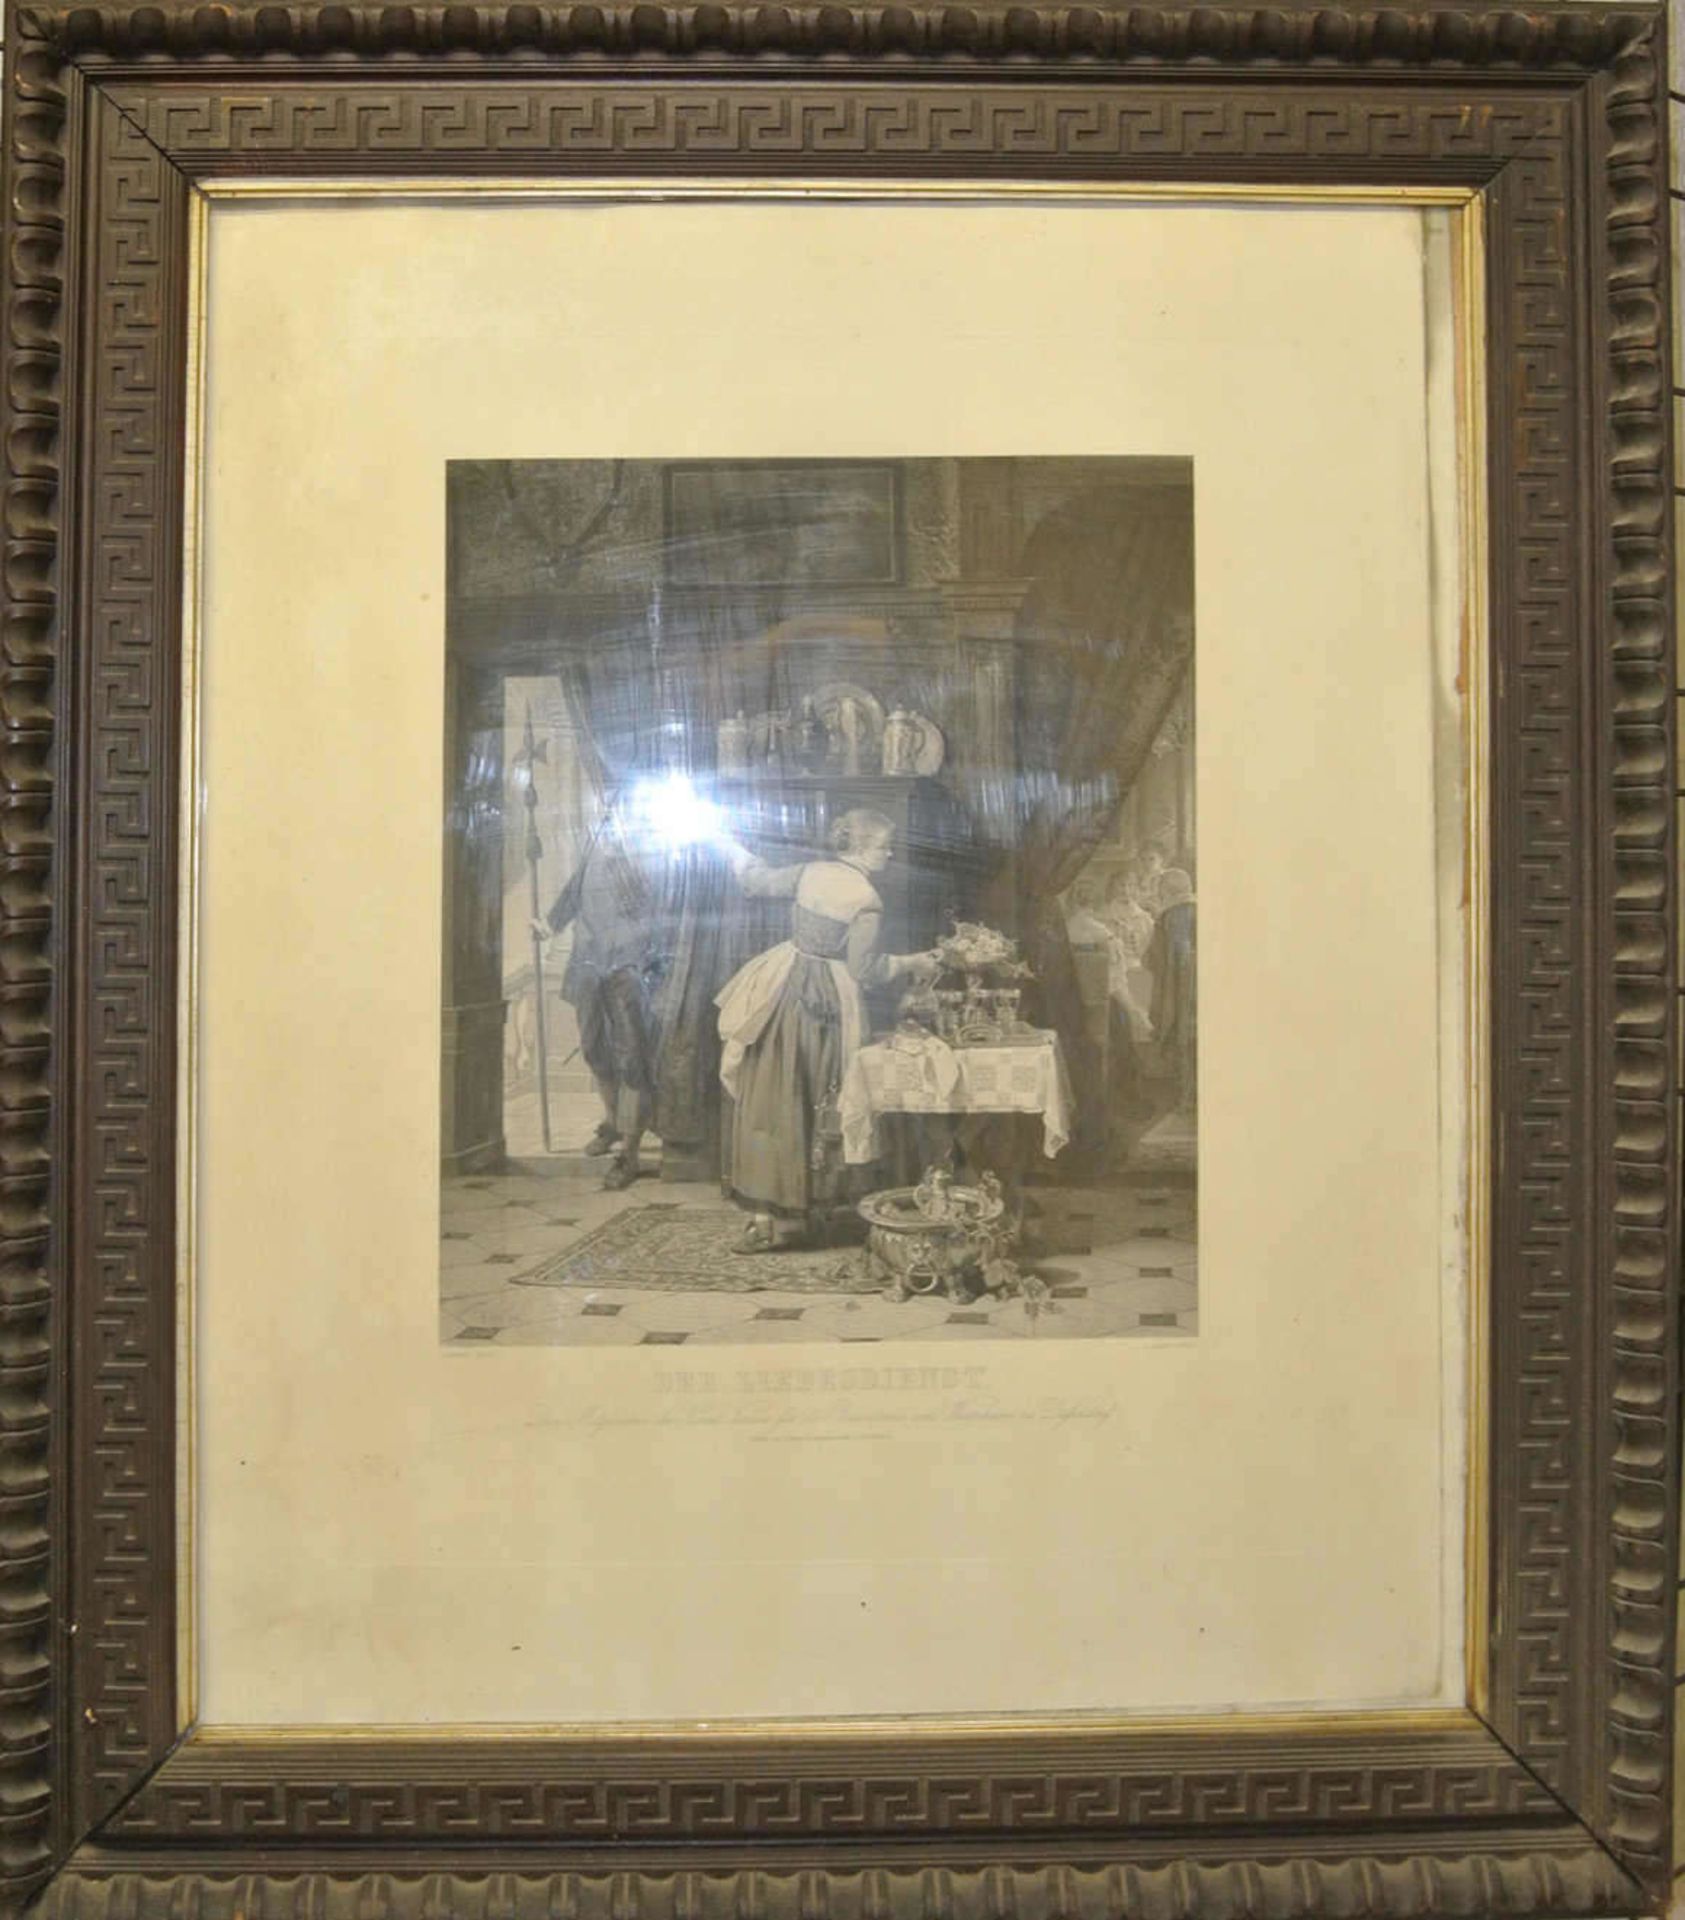 A. Siegert, 1890, alter Druck "Der Liebesdienst", im altem Rahmen, hinter Glas gerahmt. Maße: Höhe